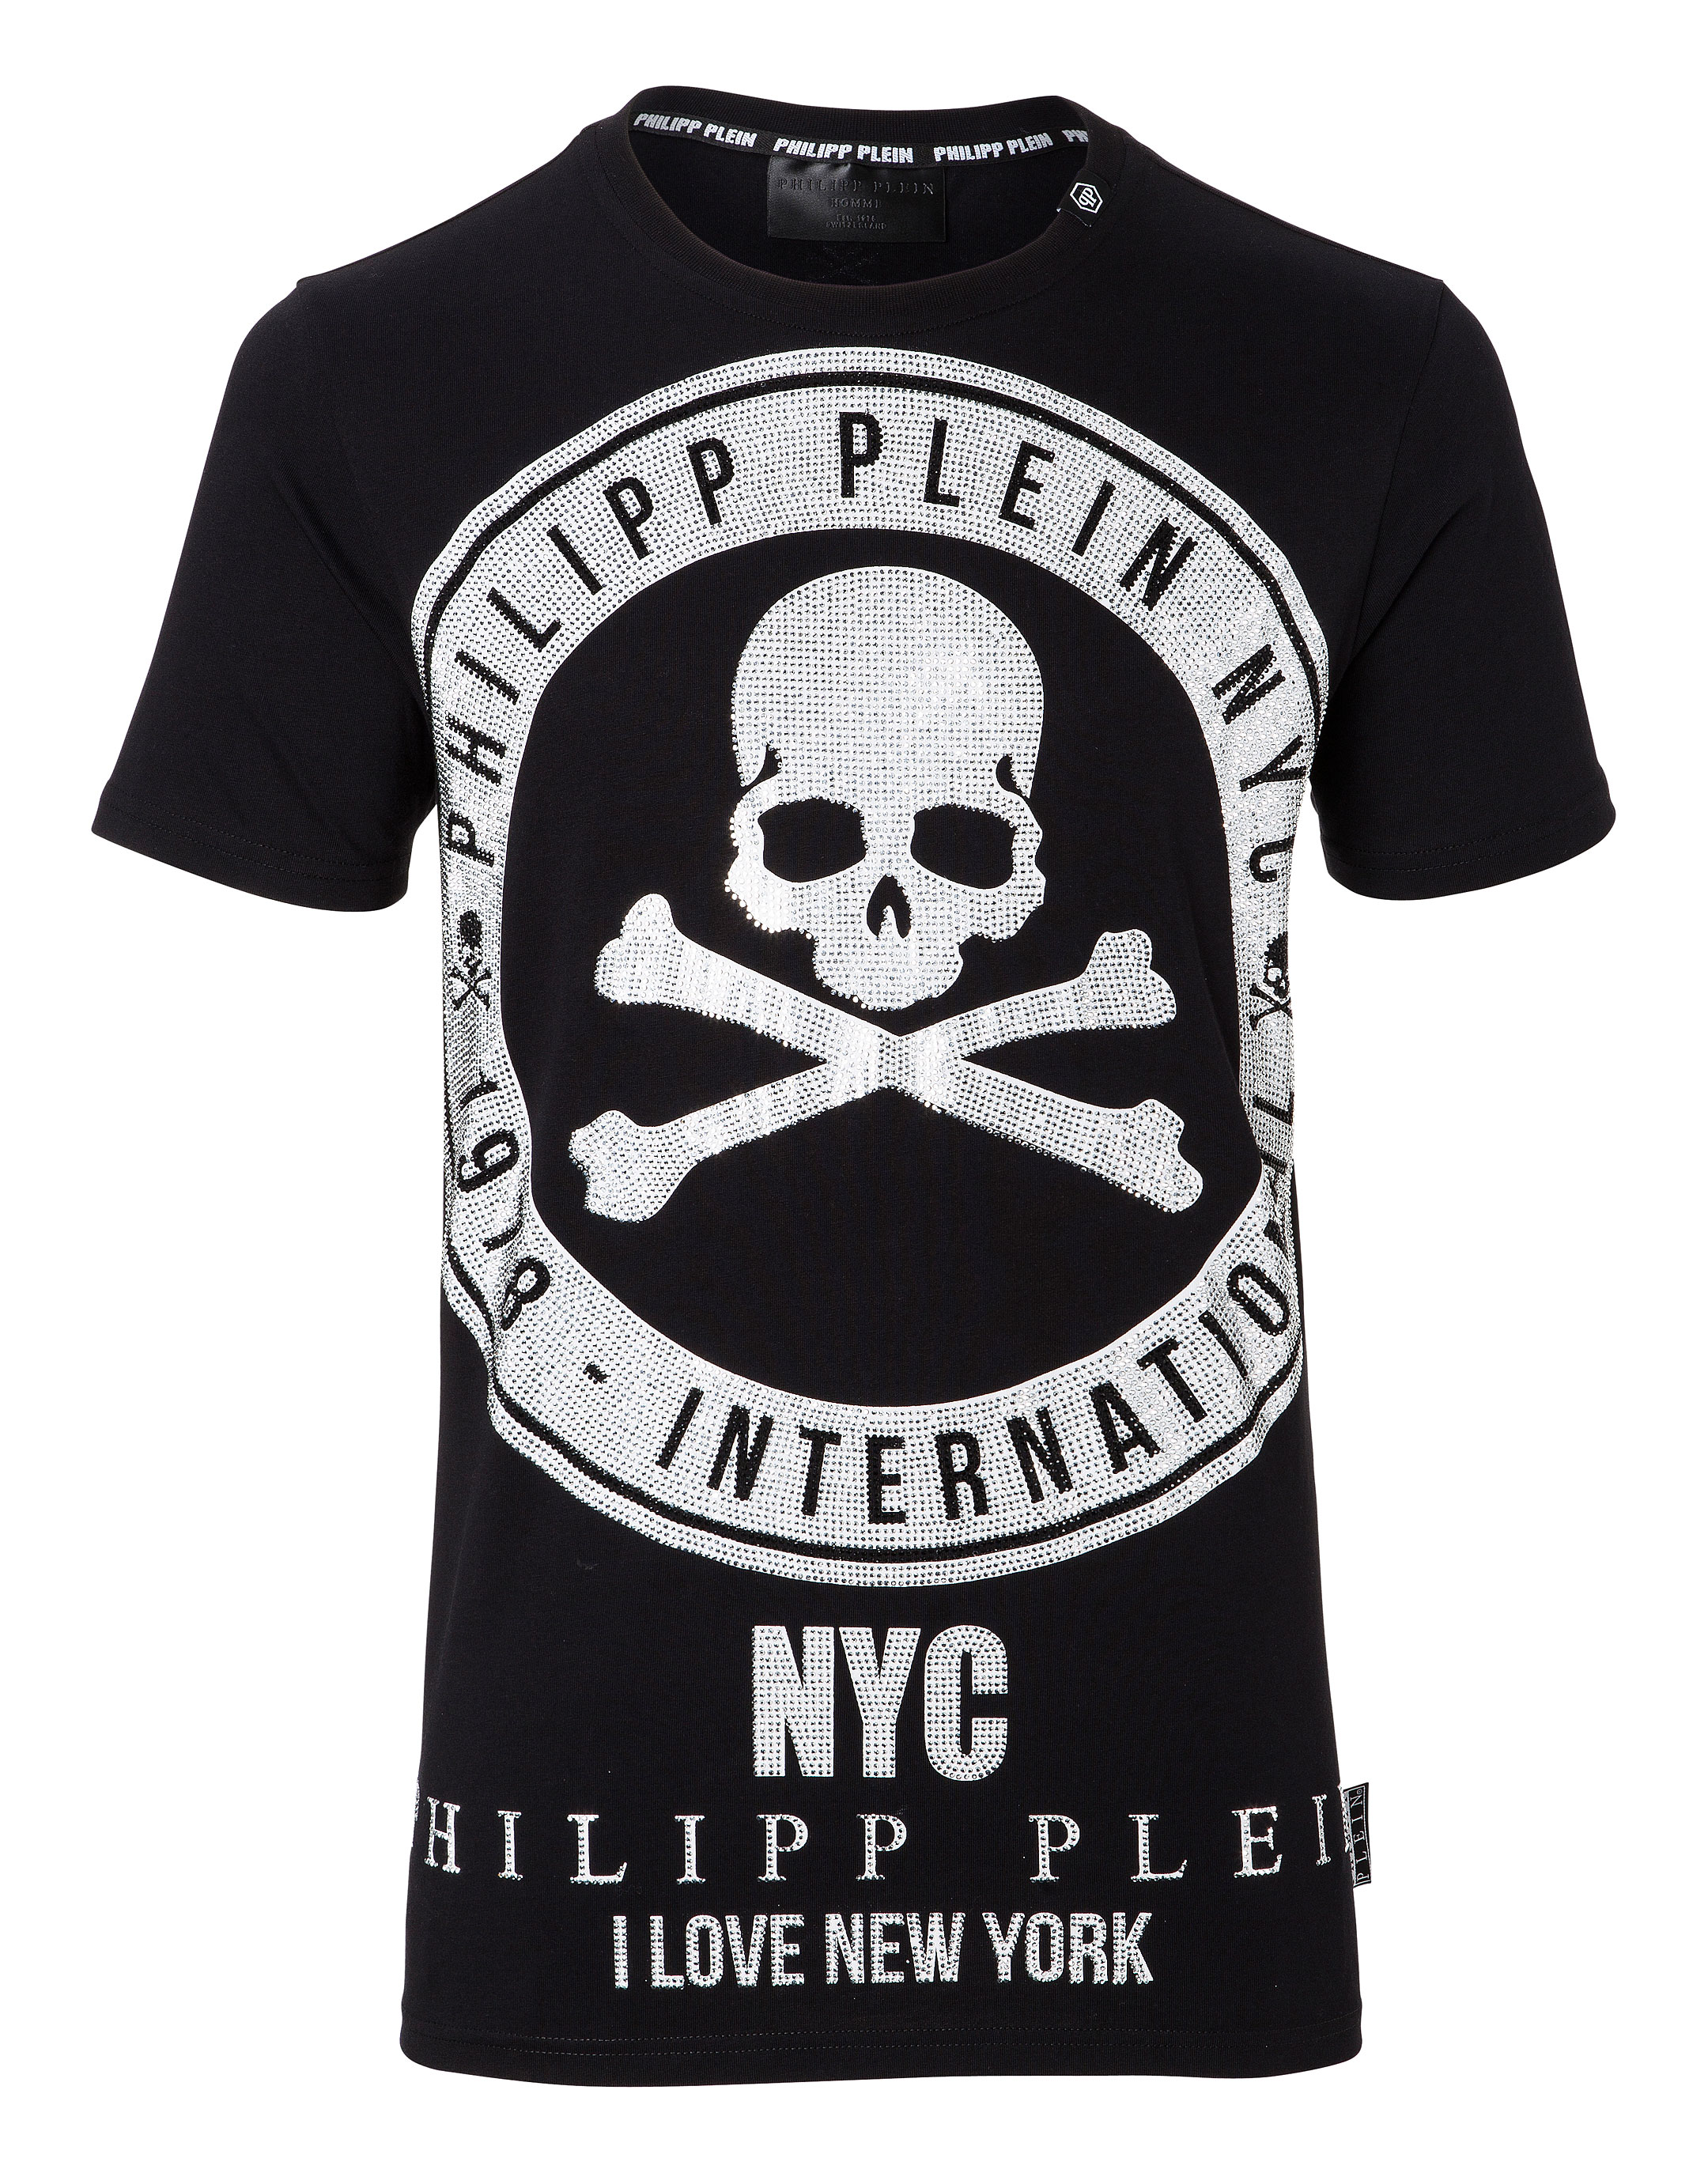 philipp plein t shirt new york